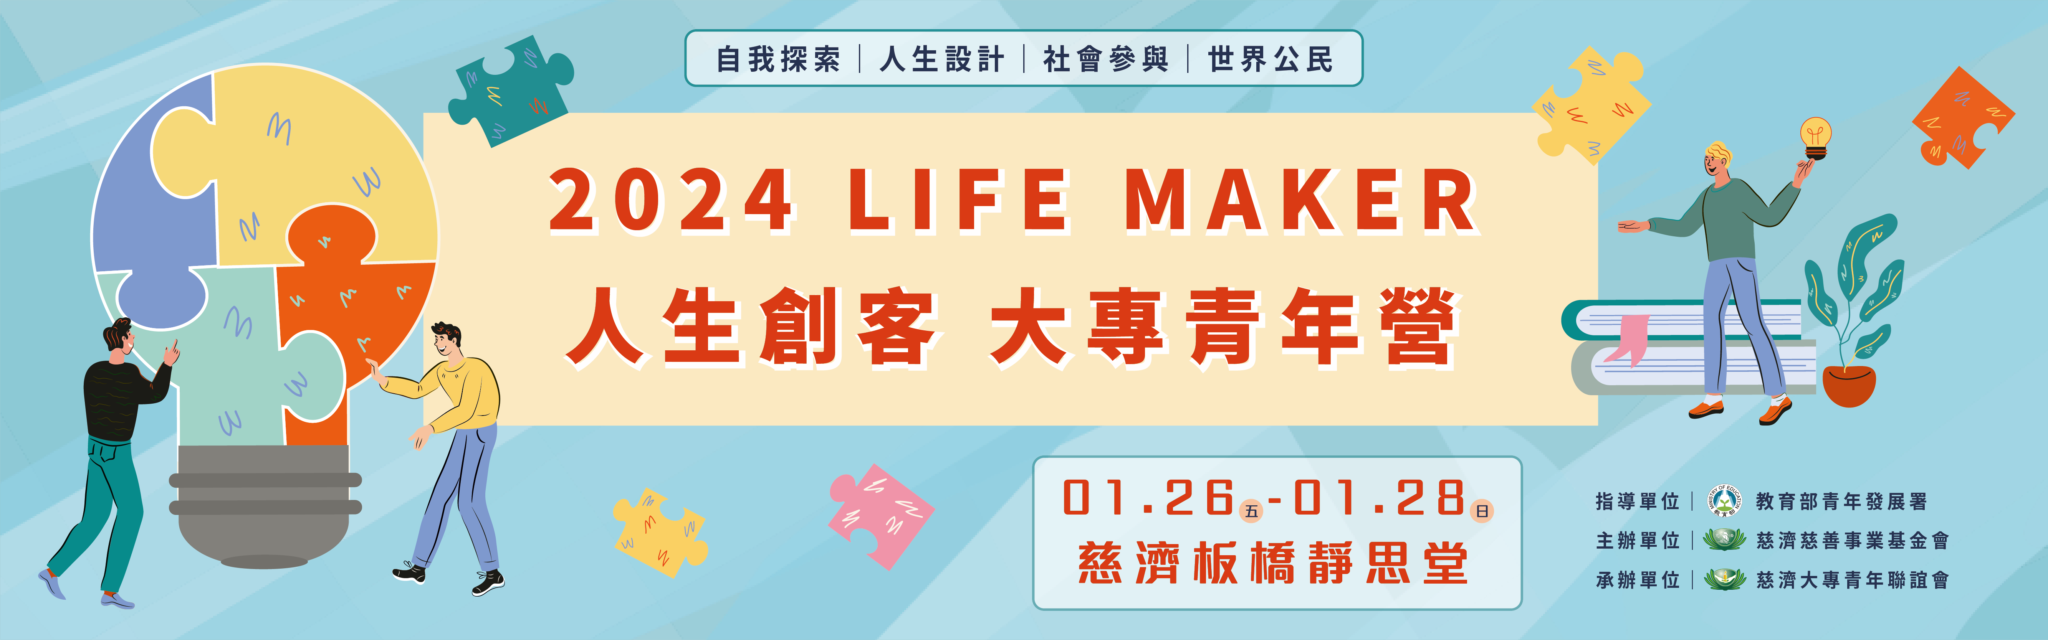 Life Maker人生創客－大專青年營活動資訊